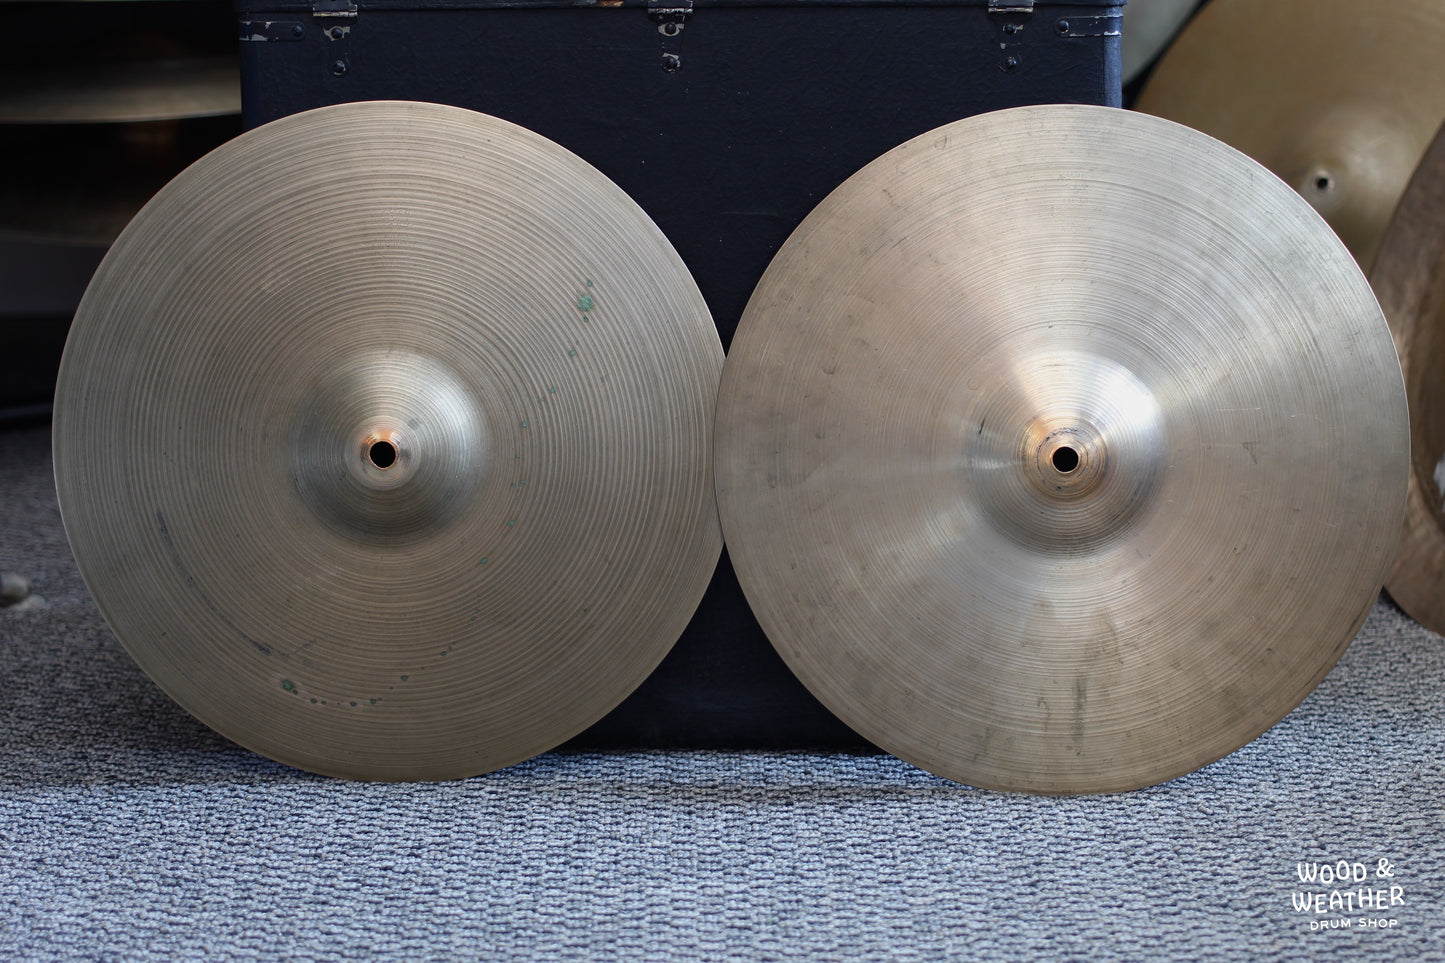 1960s A. Zildjian 14" New Beat Hi-Hat Cymbals 835/1300g